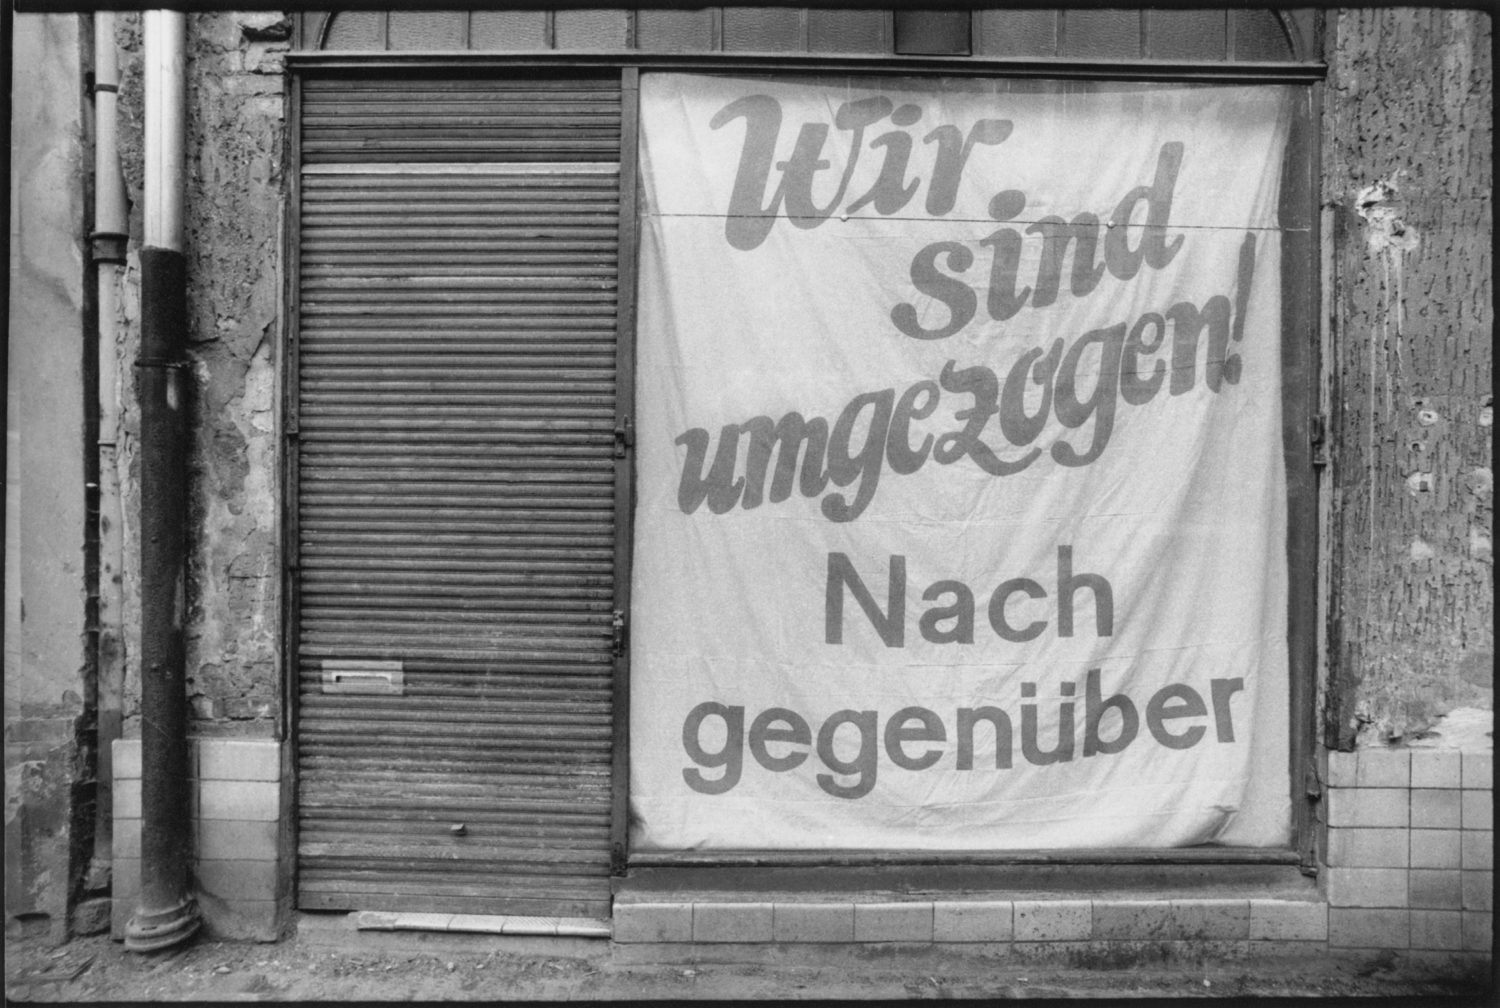 Hans-Otto-Straße, Prenzlauer Berg, Berlin, 1983.